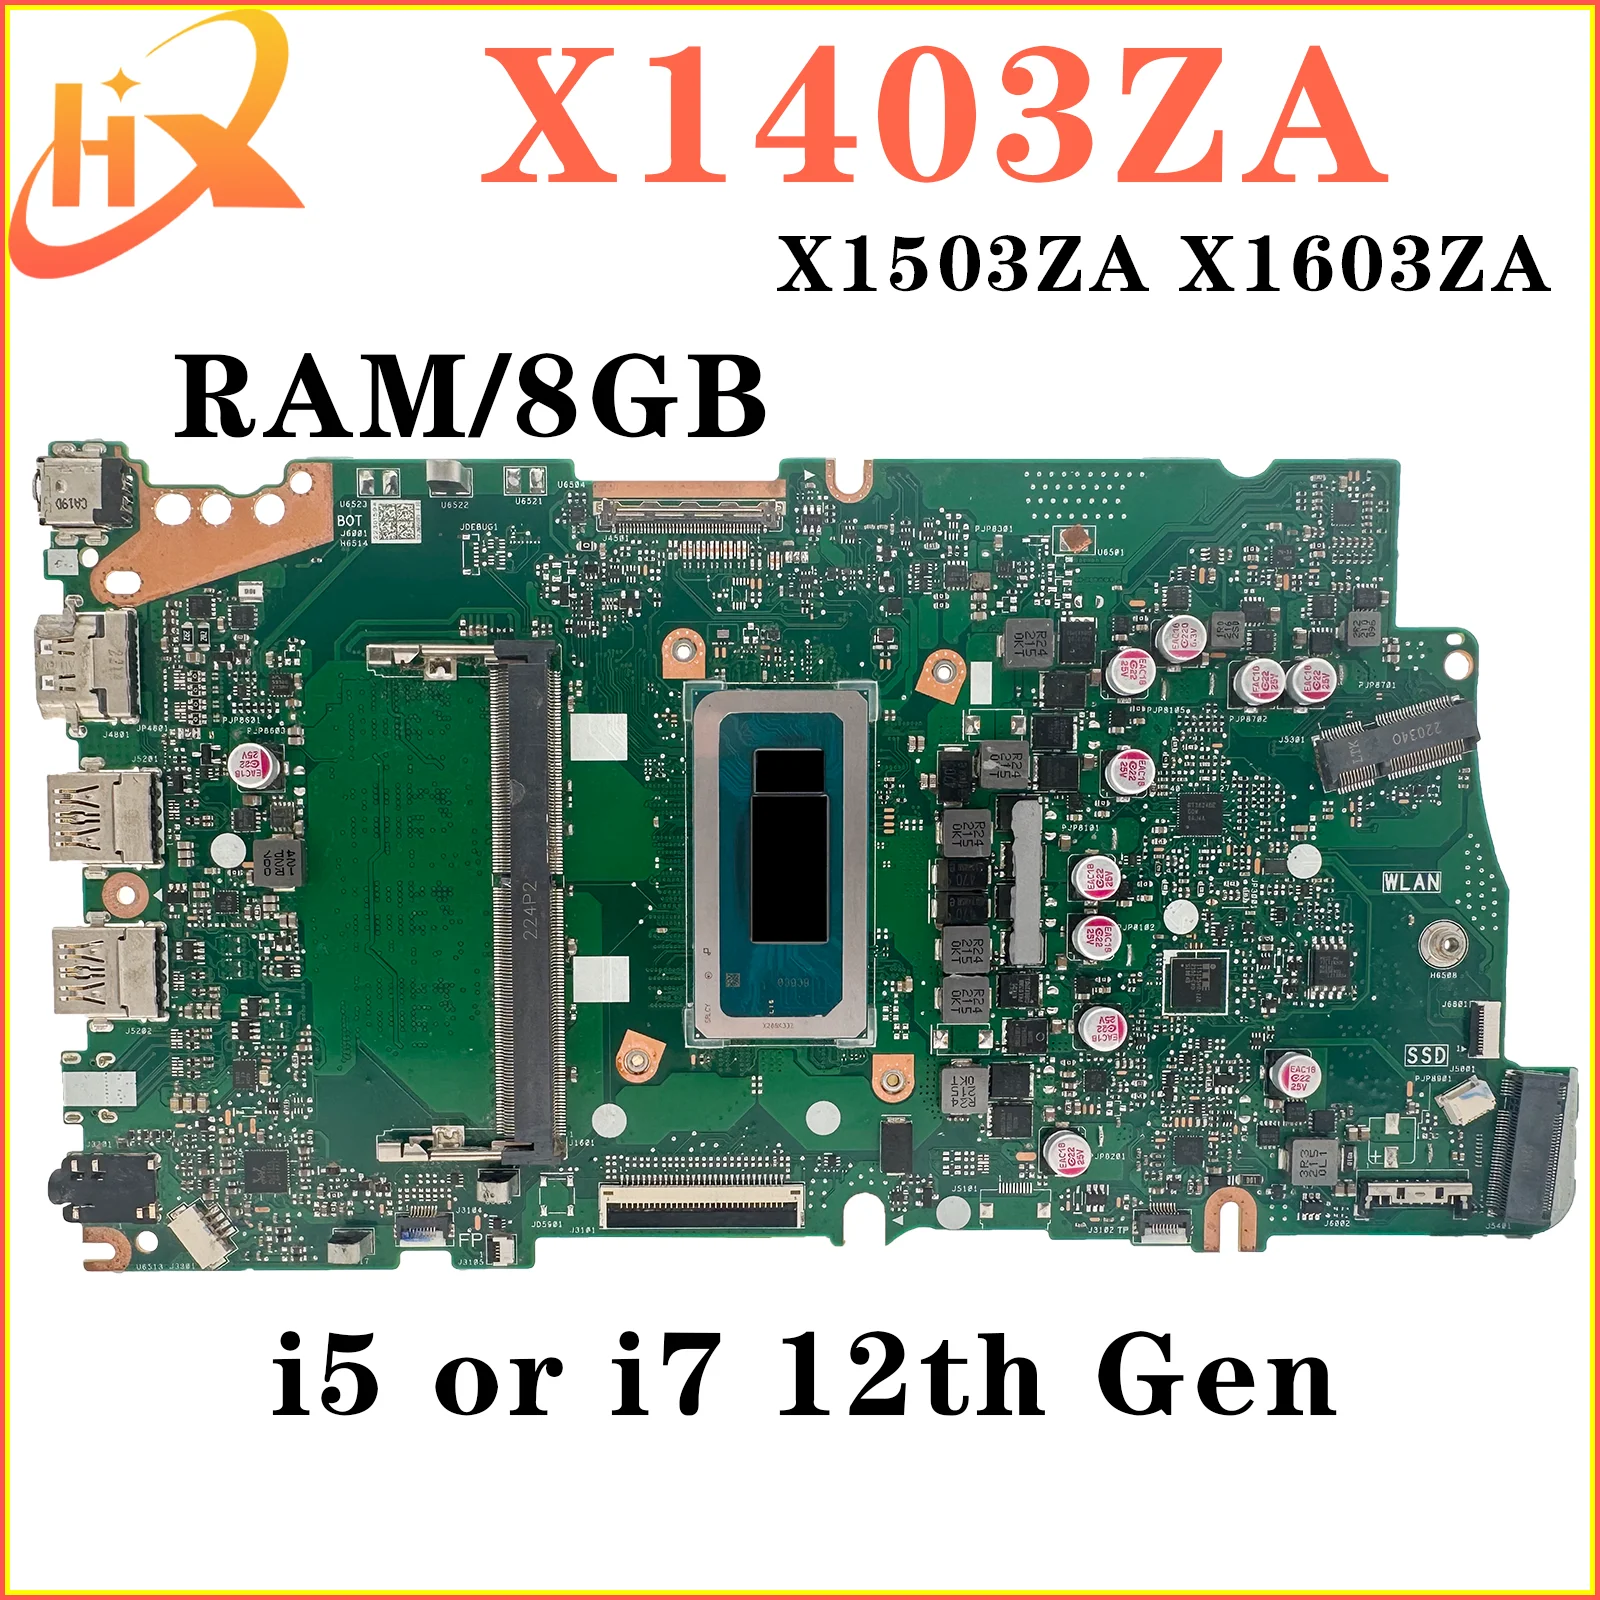 

X1403ZA Mainboard For ASUS X1503ZA X1603ZA X1402ZA X1502ZA X1602ZA X1405ZA X1505ZA X1605ZA Laptop Motherboard i5 i7 12th